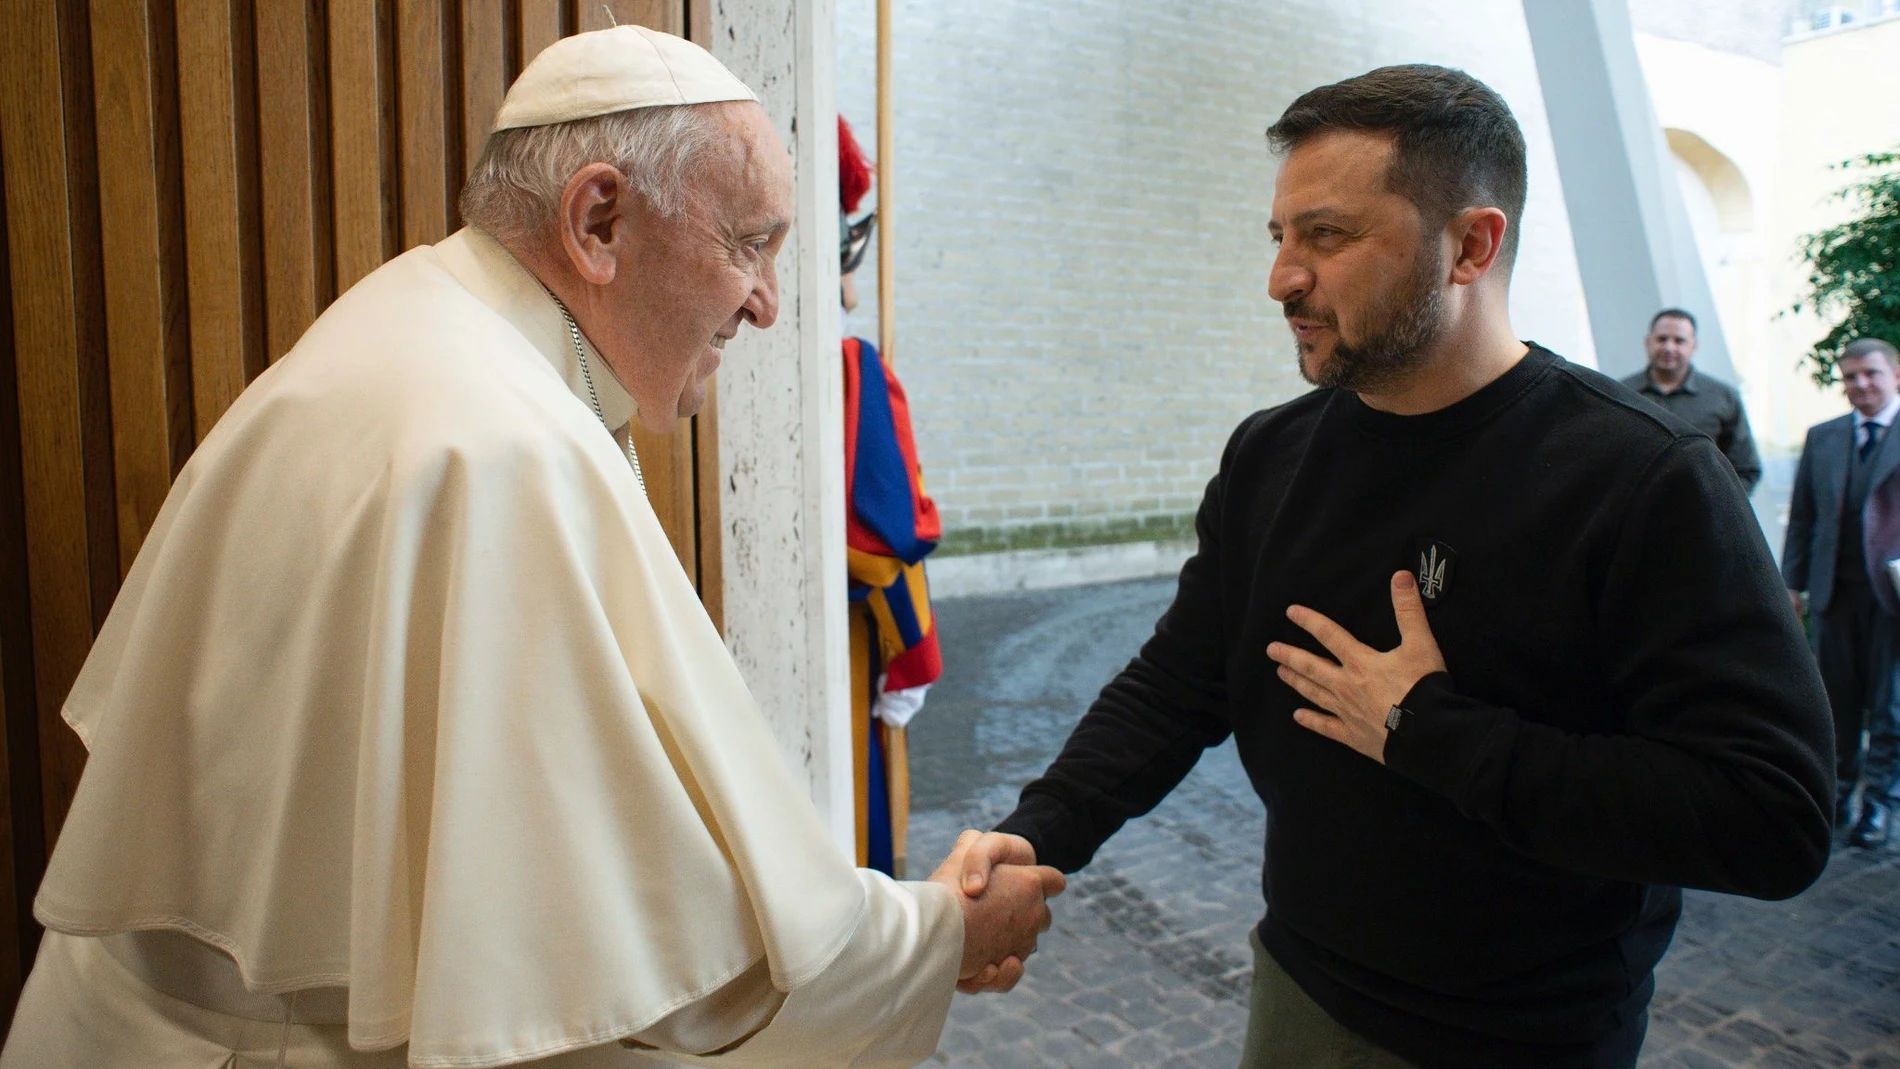 Ucrania.- Zelenski expresa su "gratitud" al Papa por sus "deseos de paz" para Ucrania: "Estoy agradecido al Vaticano"